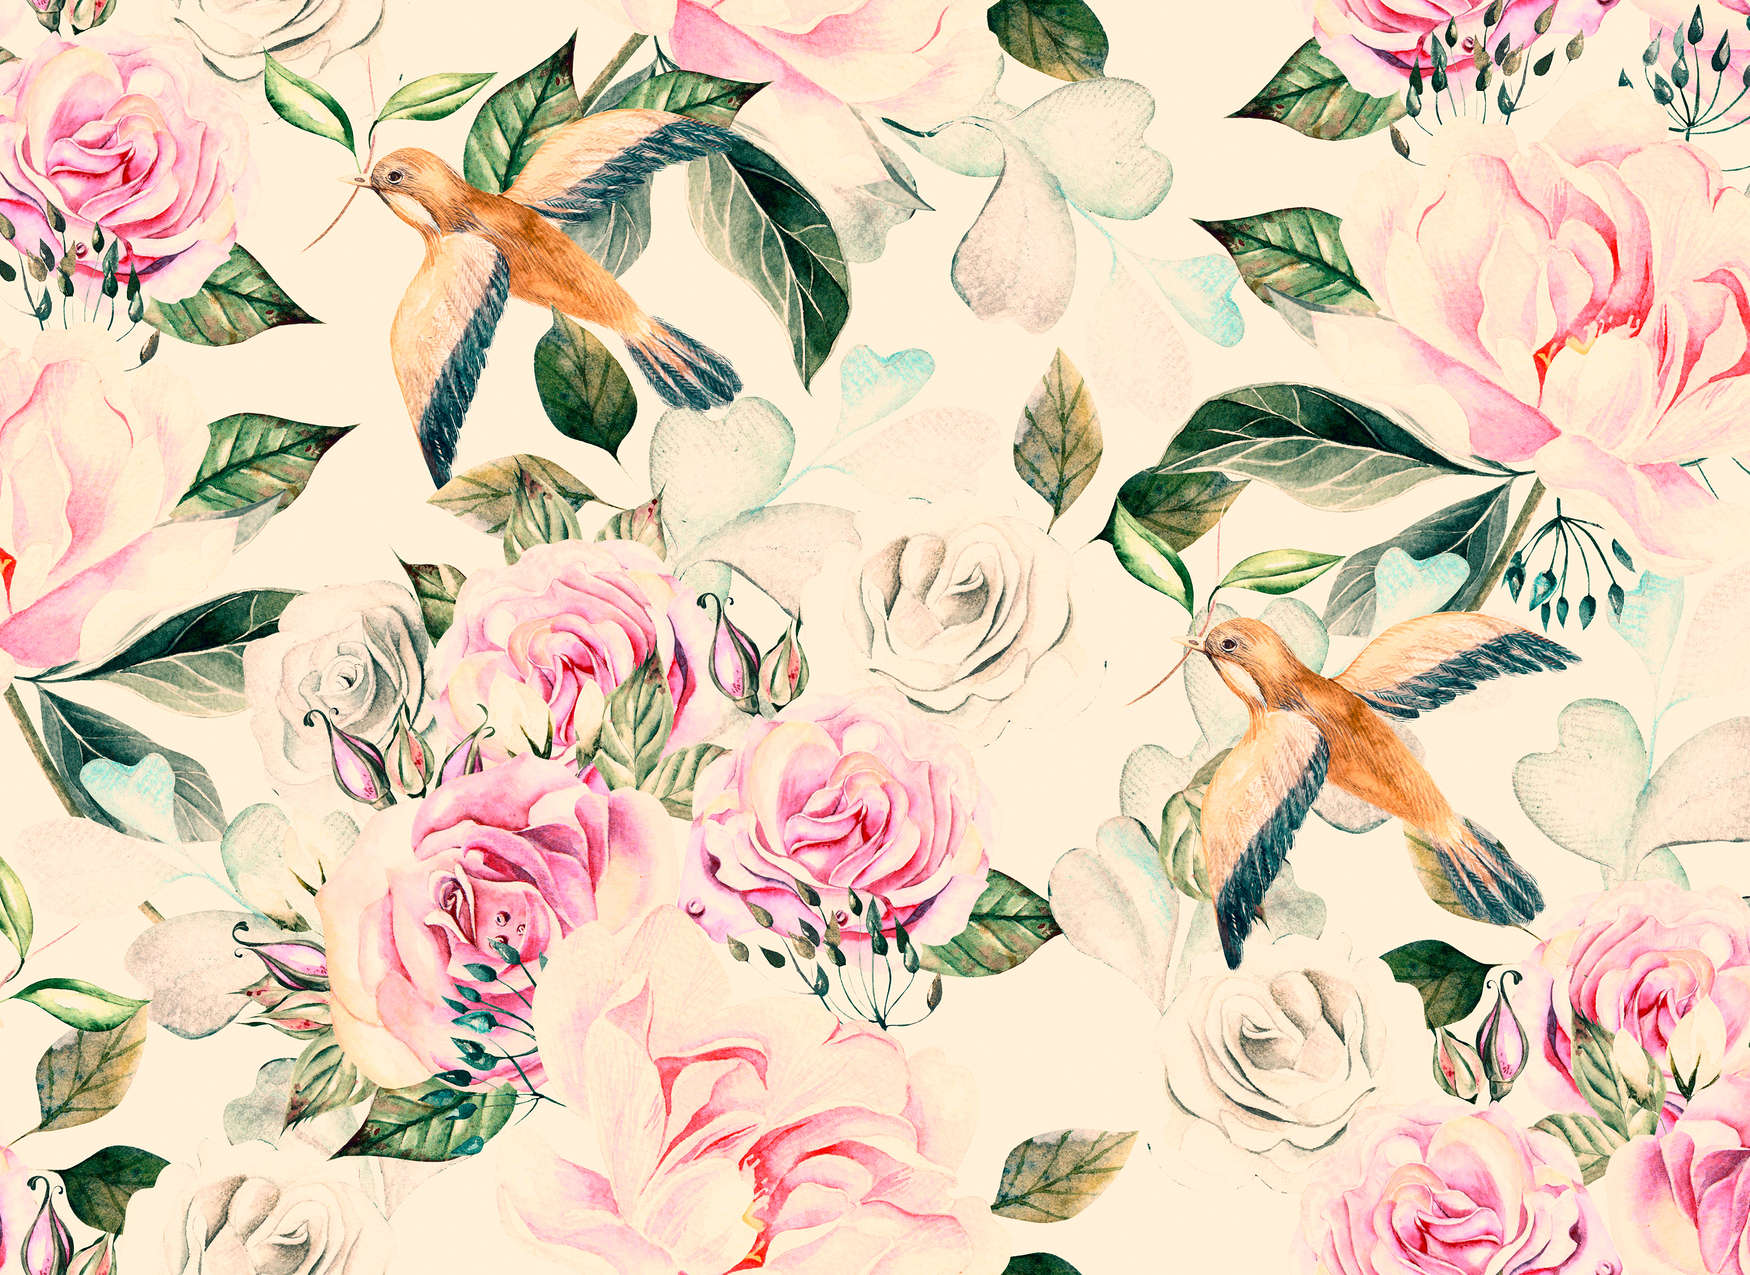             Verspielten Blumen und Vögel im Vintage-Stil – Creme, Rosa, Grün
        